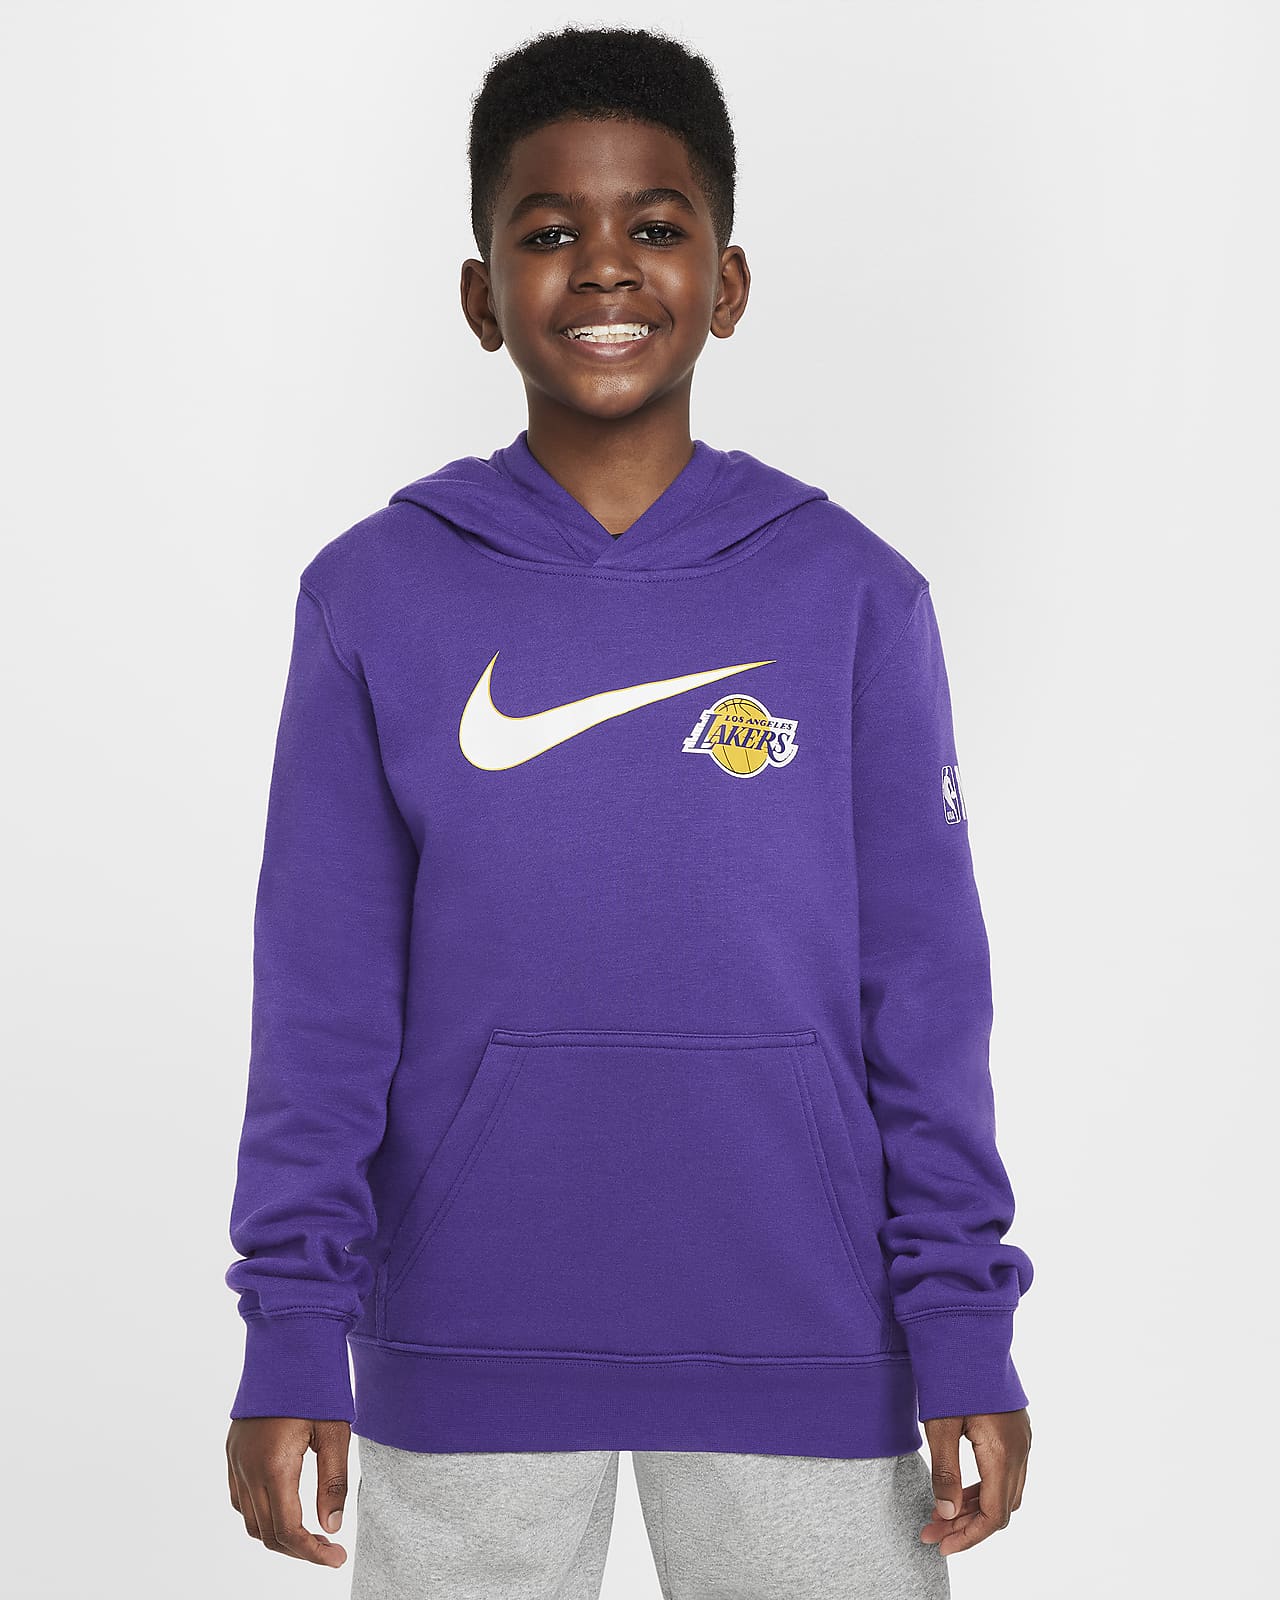 Μπλούζα με κουκούλα Nike NBA Λος Άντζελες Λέικερς Club Fleece Essential για μεγάλα αγόρια